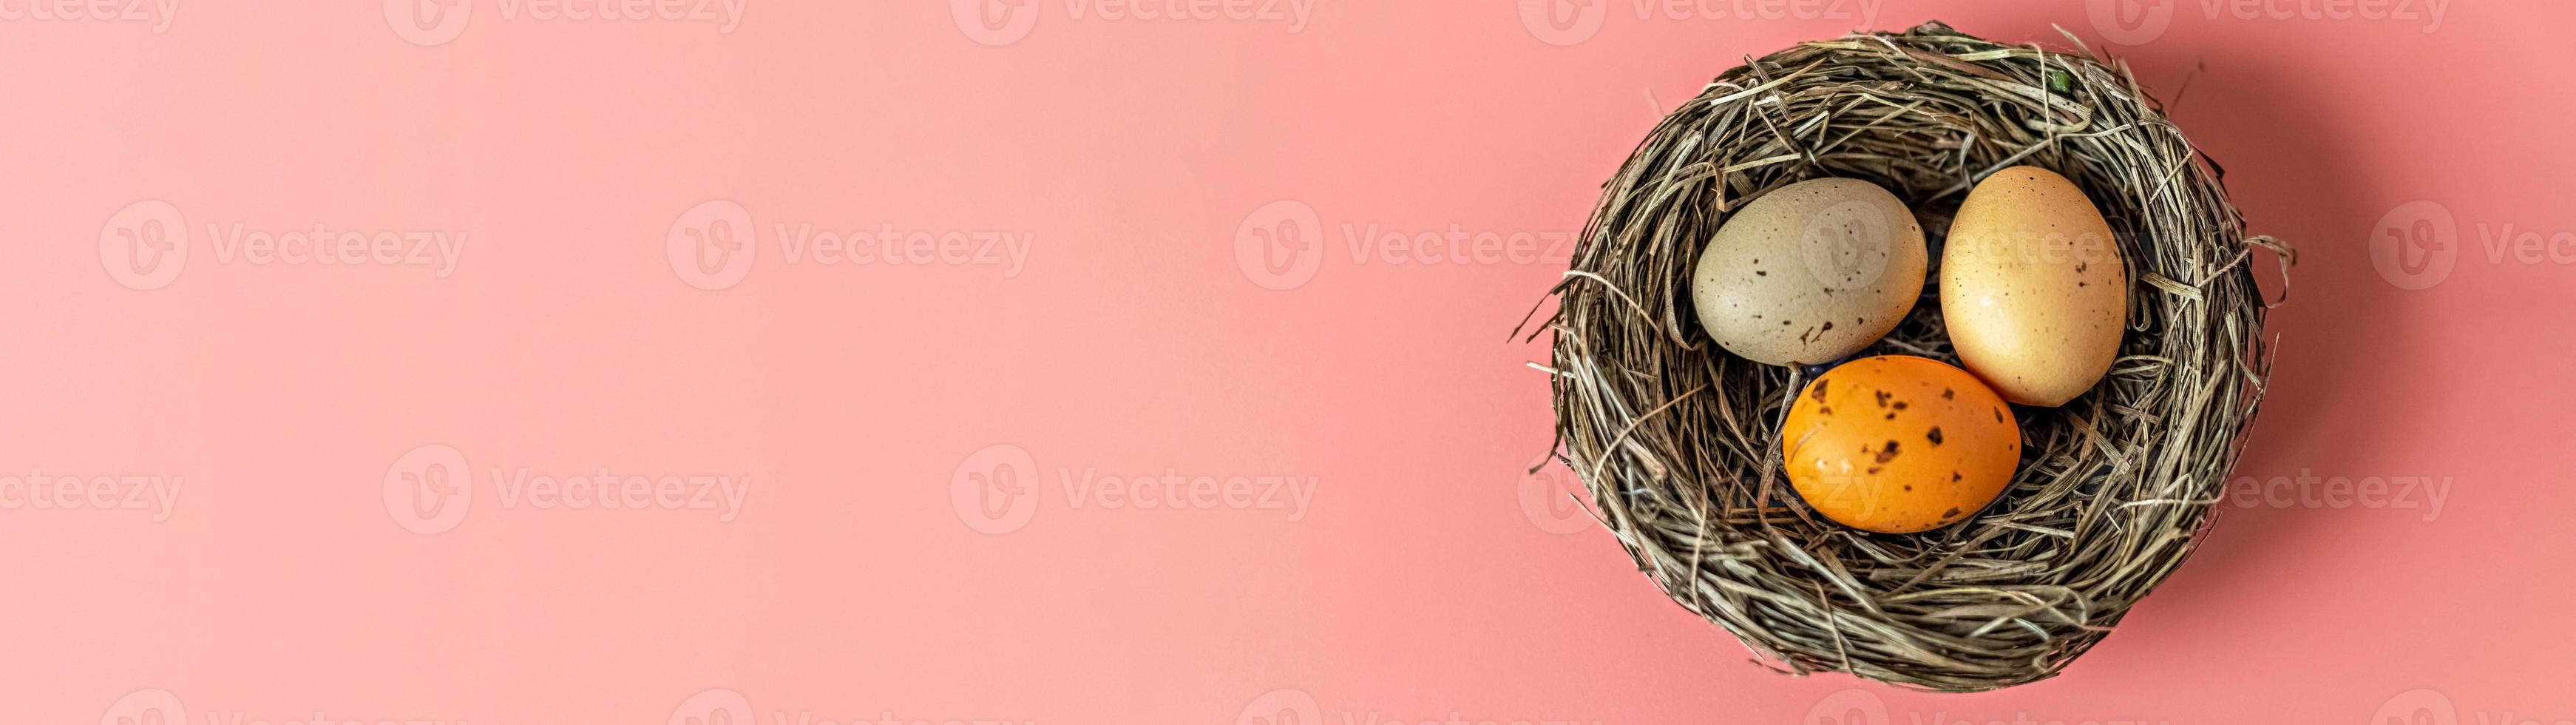 oeufs de pâques dans un nid naturel avec des oeufs d'oiseaux sur fond rose. vue d'en haut.banner photo